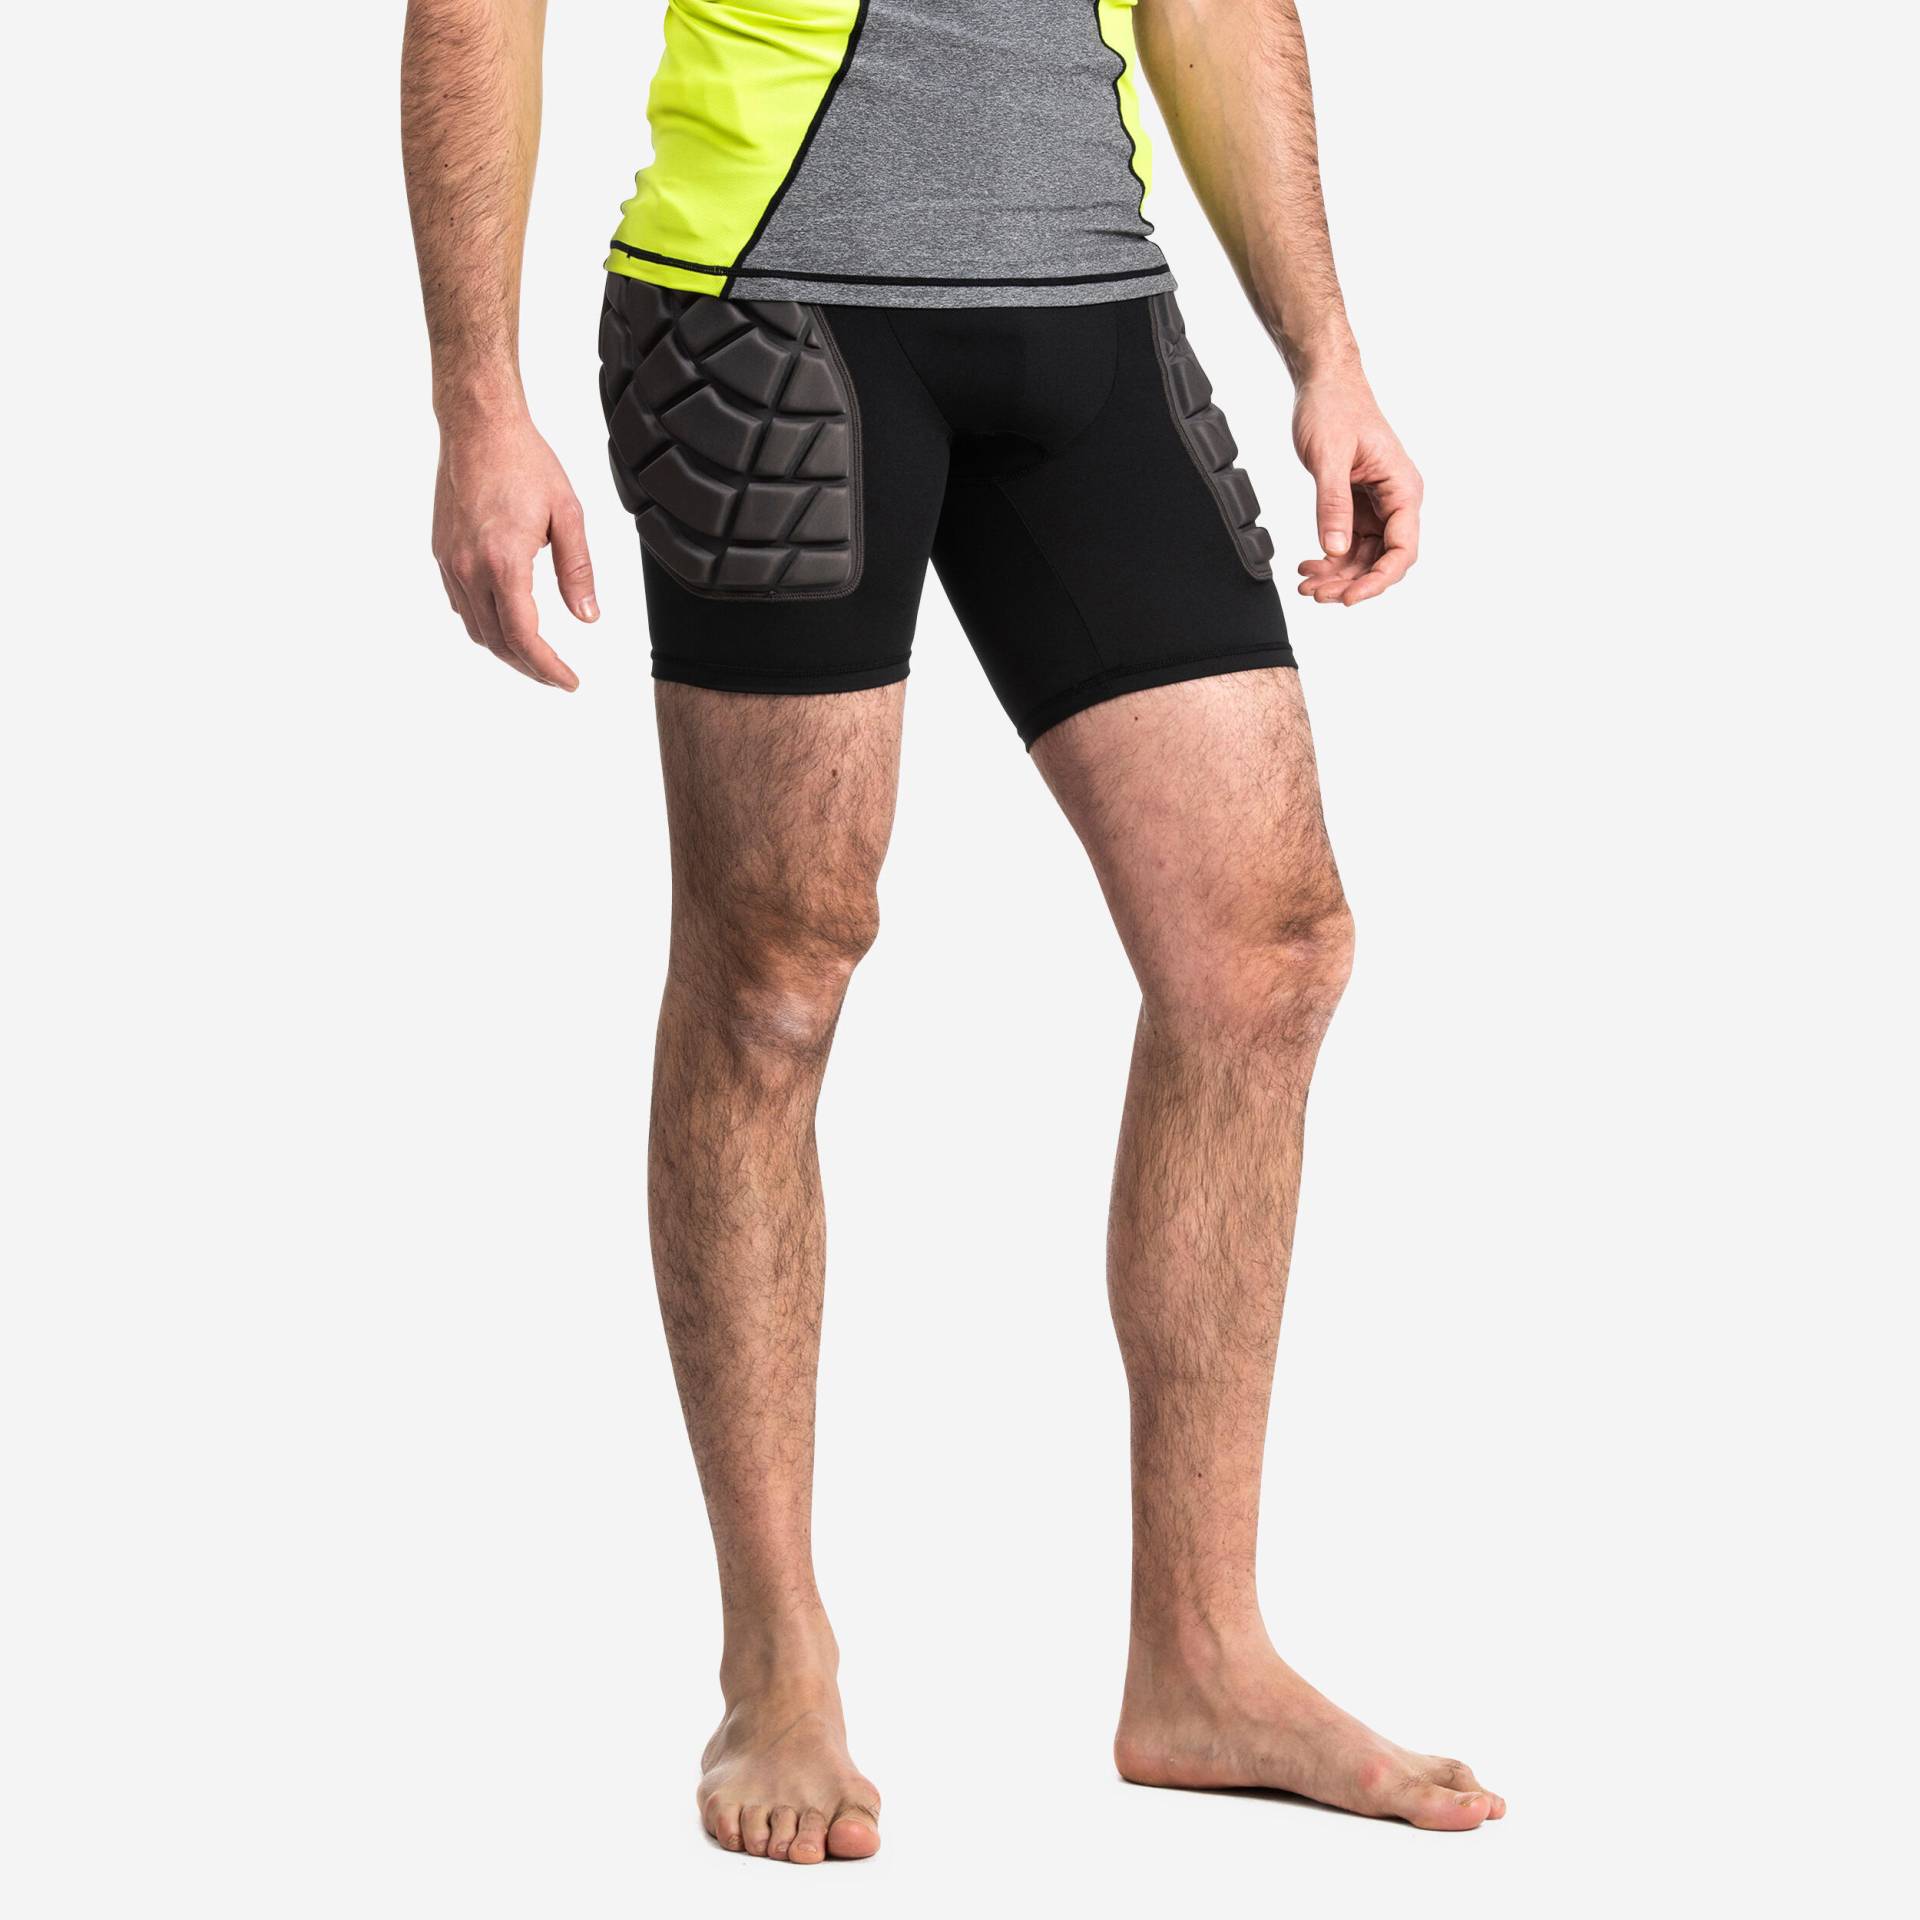 Damen/Herren Rugby Protector Shorts - R500 schwarz/gelb von OFFLOAD